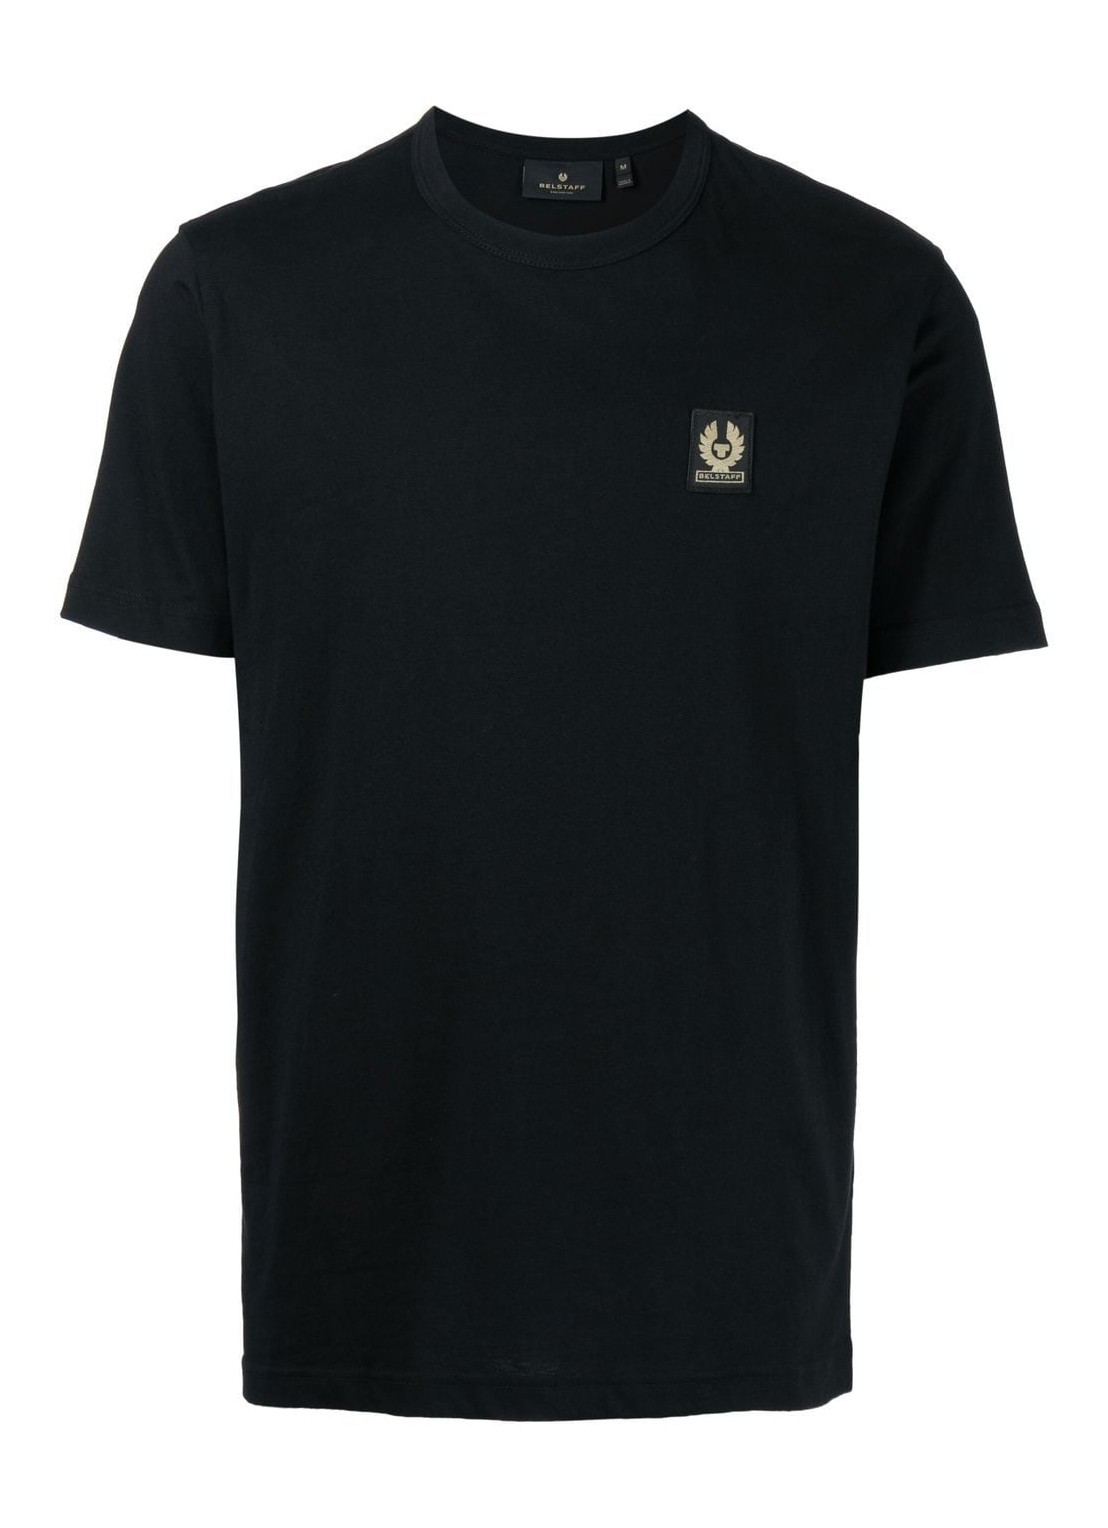 Camiseta belstaff t-shirt man belstaff t-shirt 100055 black talla L
 